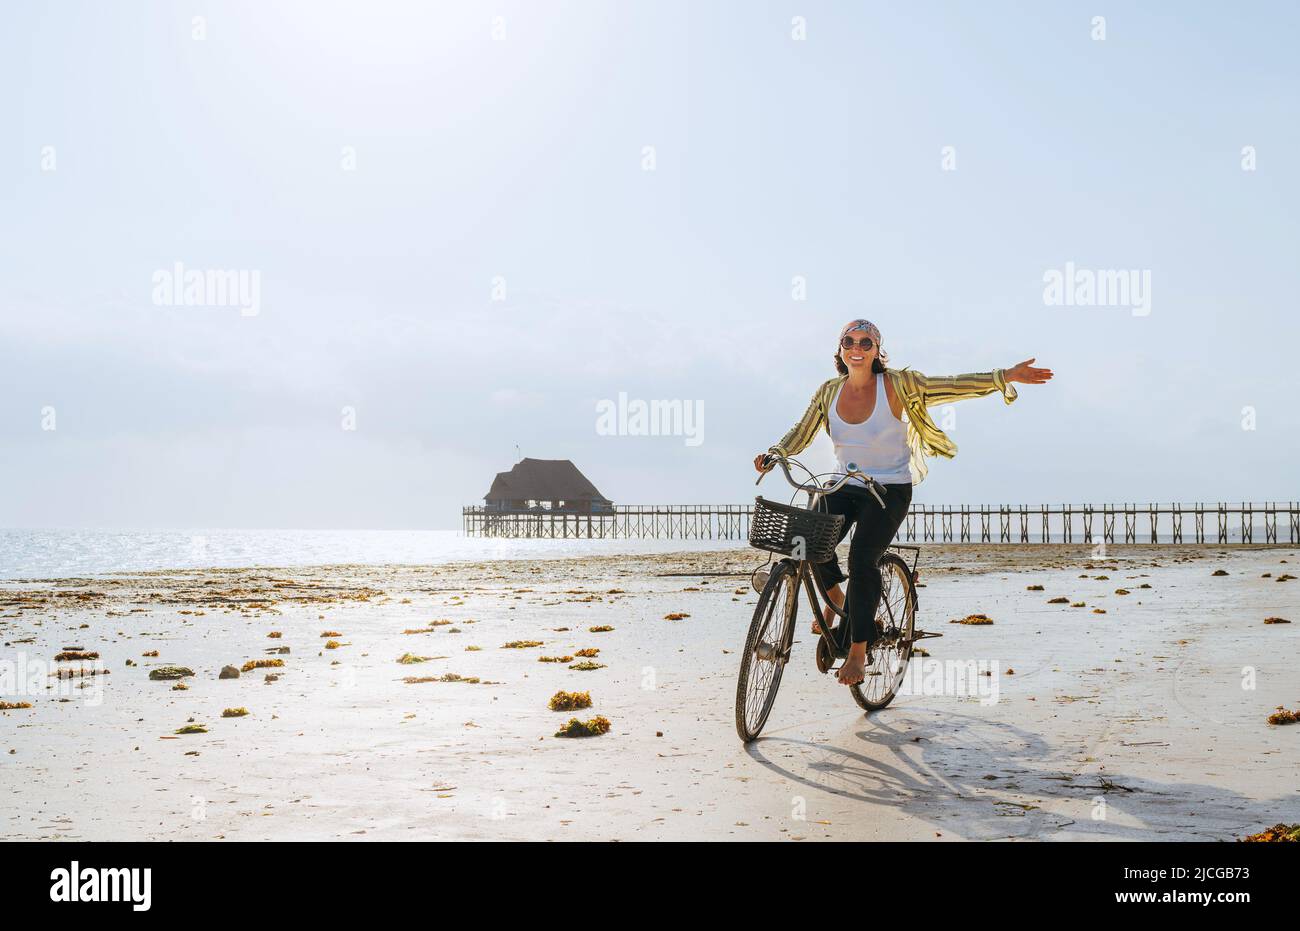 Eine junge Frau, die in leichten Sommerkleidung gekleidet war, warf freudig ihre Hand hoch, während sie auf einem alten Vintage-Fahrrad mit einem Korb auf den Ebbe-Ozeanweißen fuhr Stockfoto